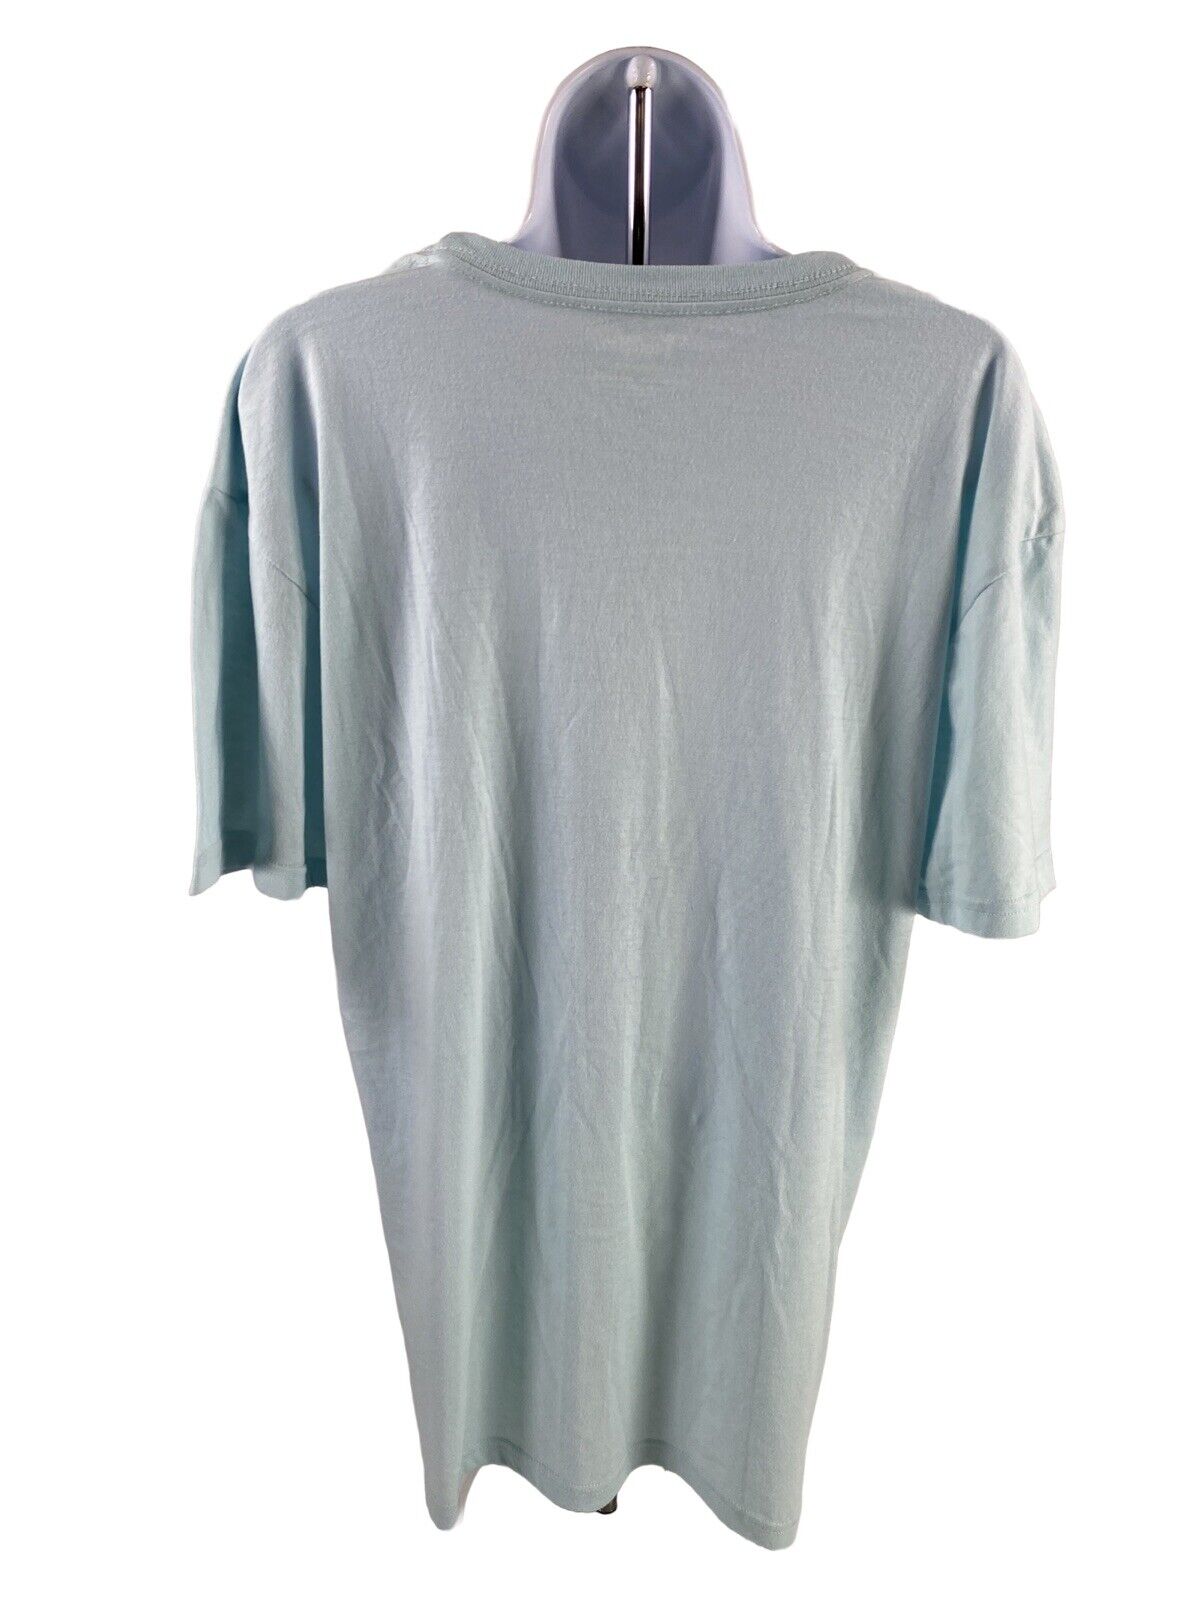 NUEVA camiseta Do Good de manga corta azul Ice de Cotopaxi para mujer - XL